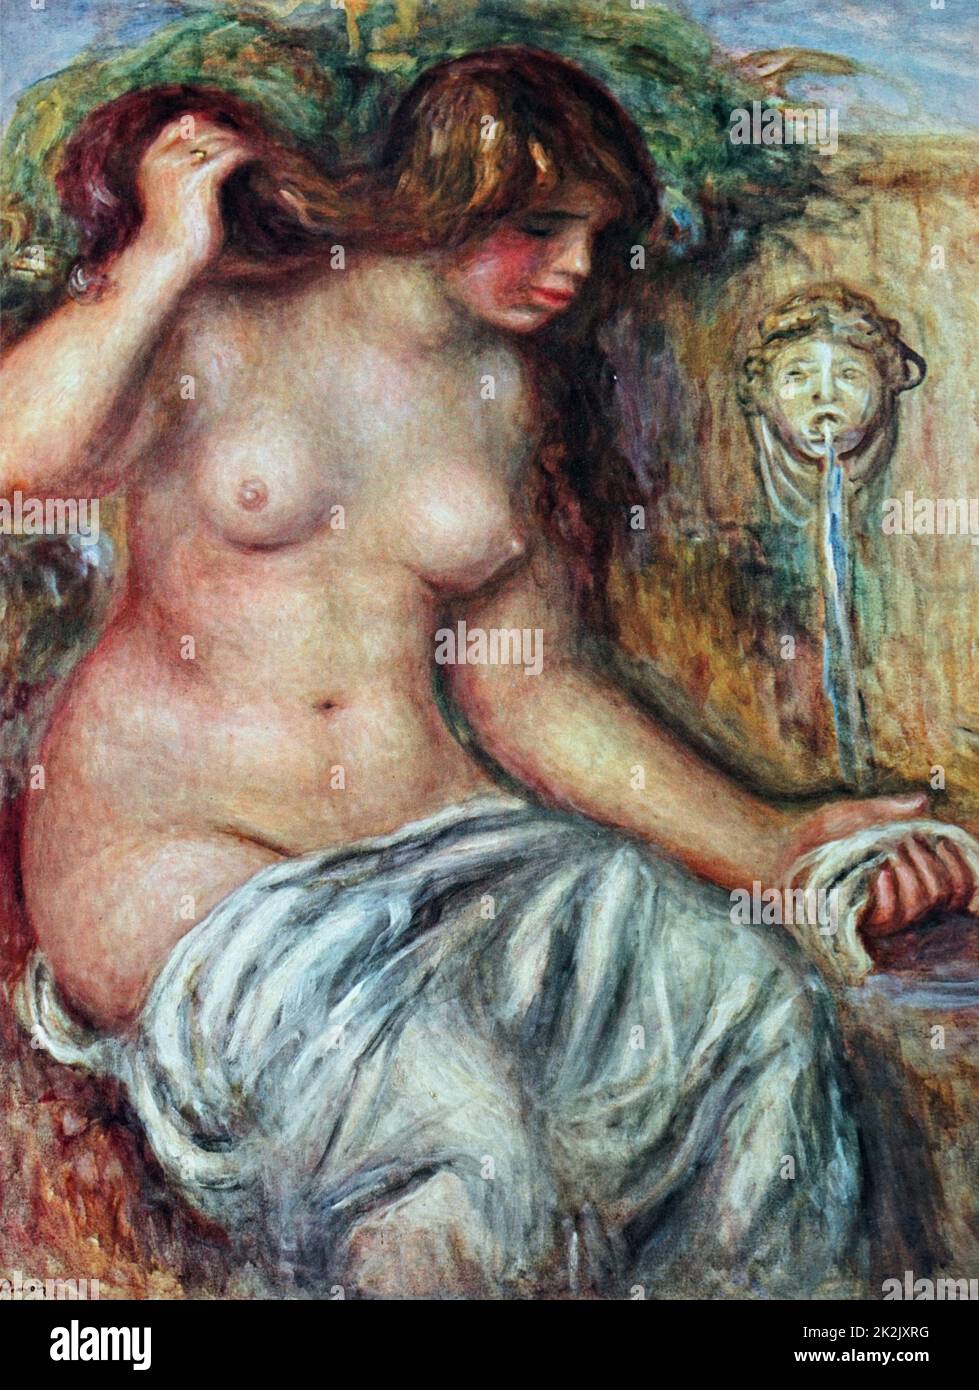 Pintura titulada "La mujer en la fuente' de Pierre-Auguste Renoir (1841-1919), un artista francés. Fecha Siglo XX Foto de stock